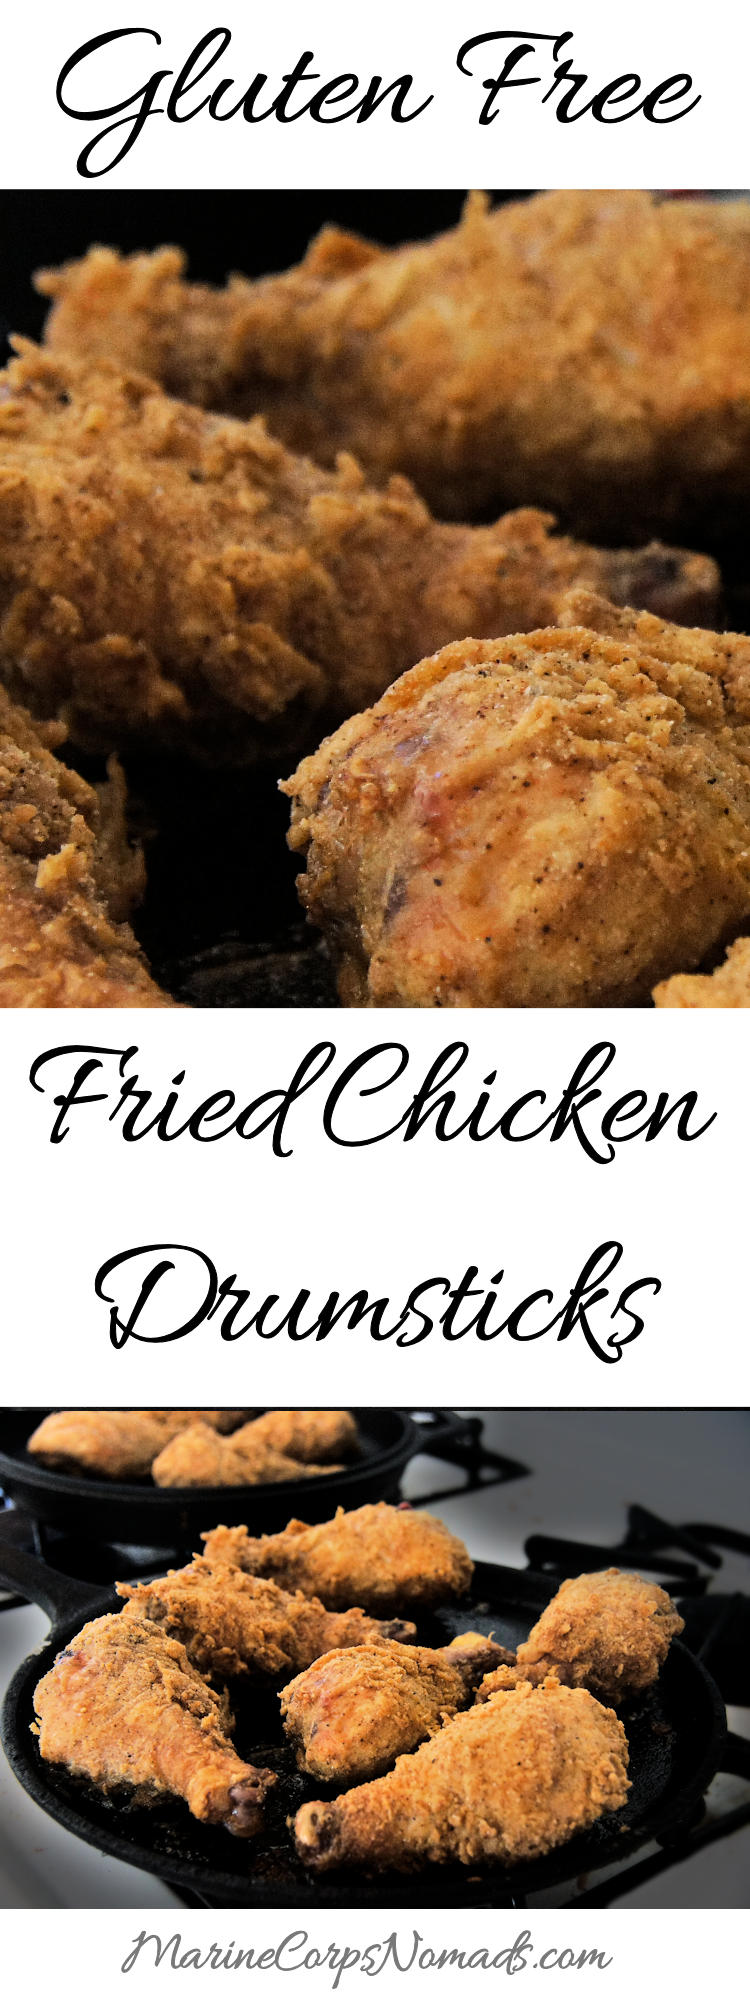 Gluten Free Fried Chicken Drumsticks | Main Dish | Marine Corps Nomads